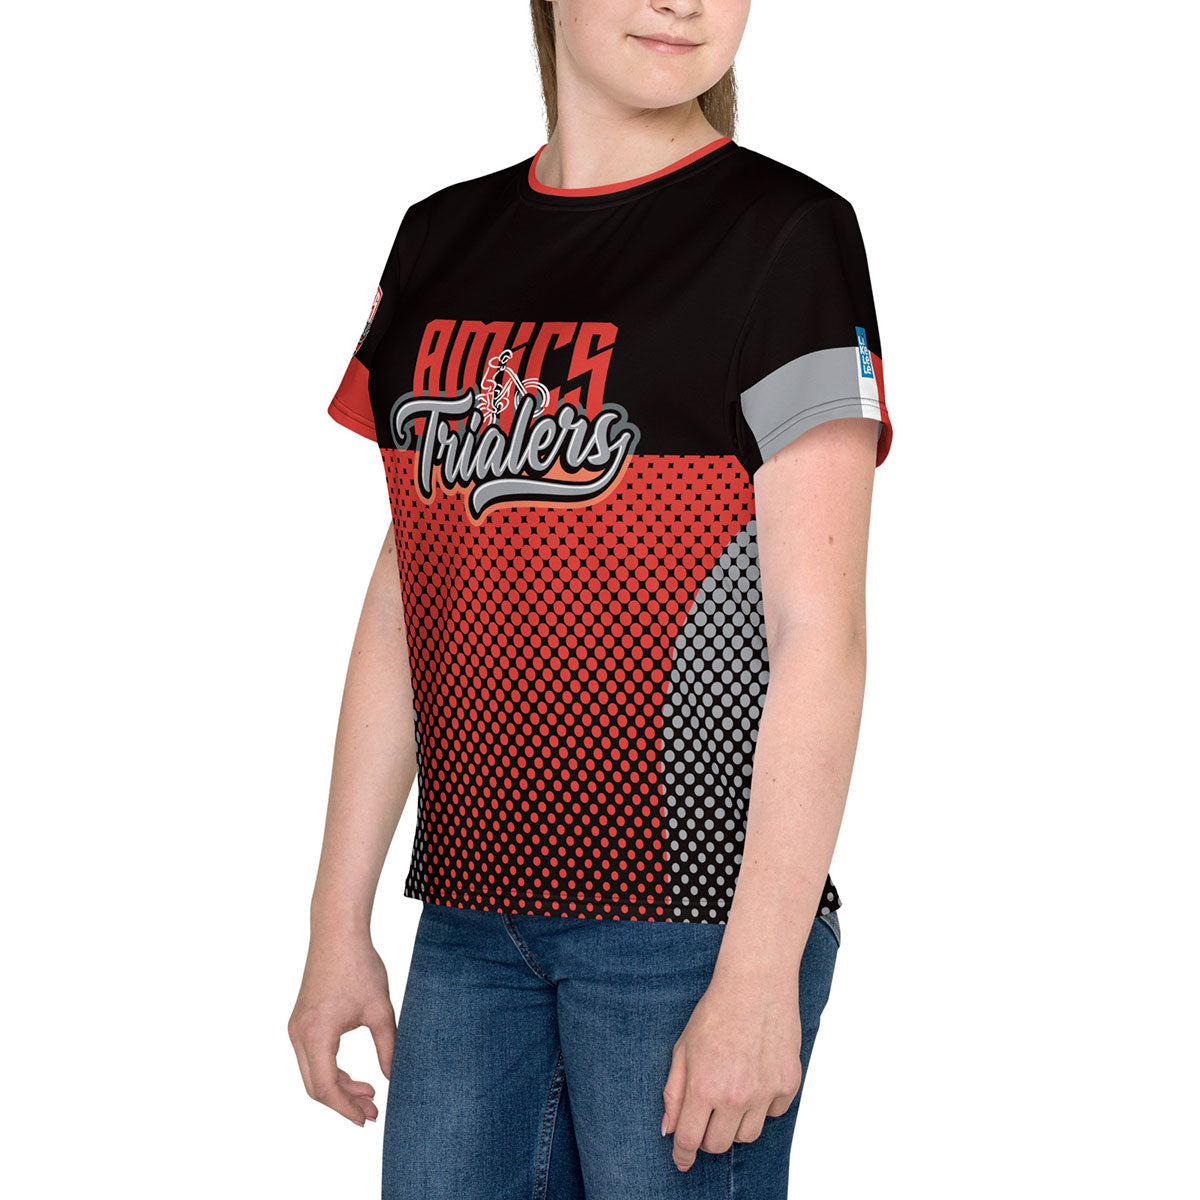 AMICS TRIALERS · Camiseta m/corta·Adolescente/Unisex · Premium·Full Print-362x5ipi